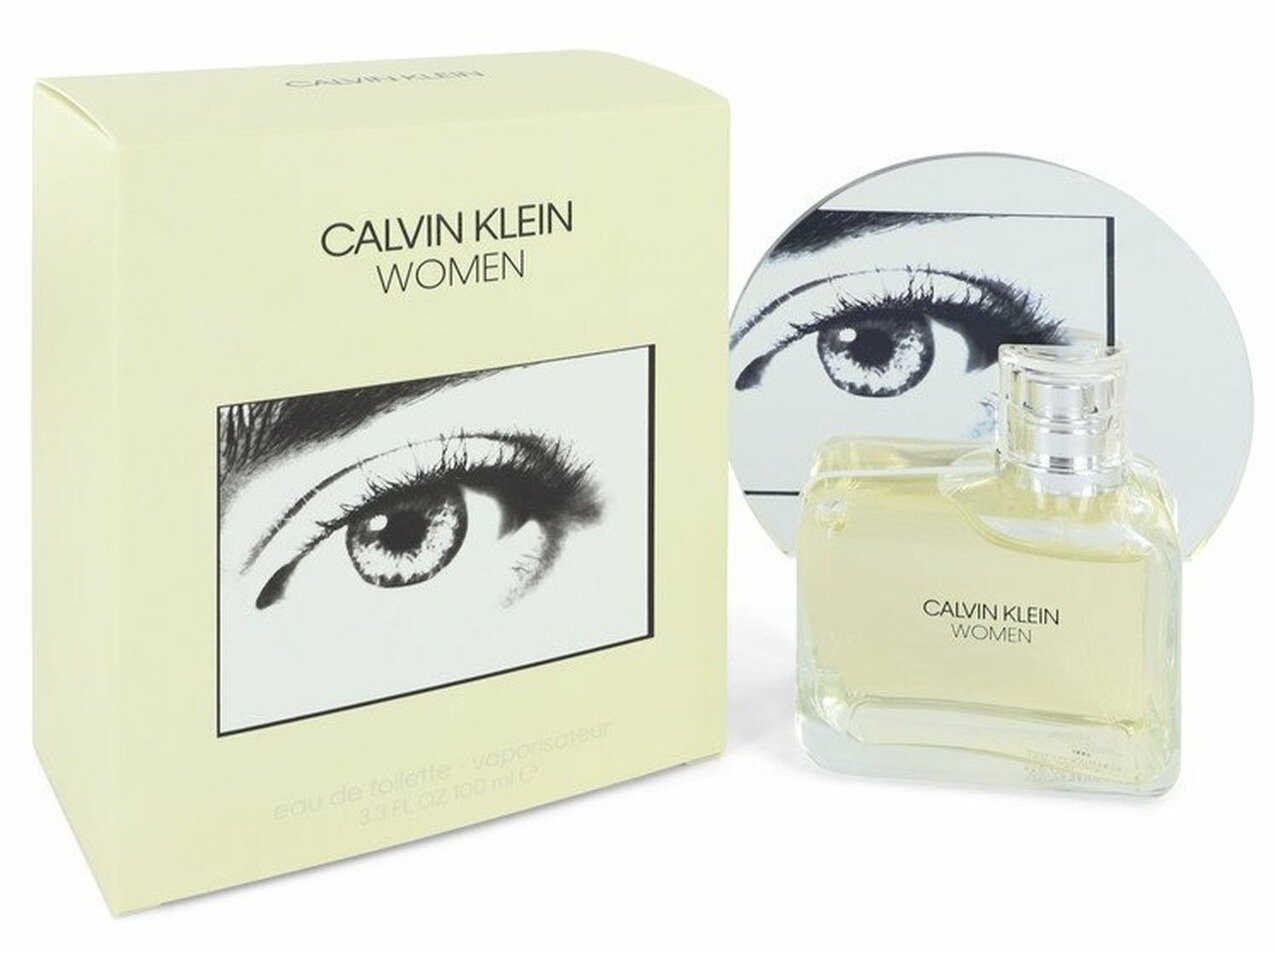 Calvin Klein Women (Eye) by Calvin Klein Women 3.3 oz Eau de Toilette Spray | FragranceBaba.com